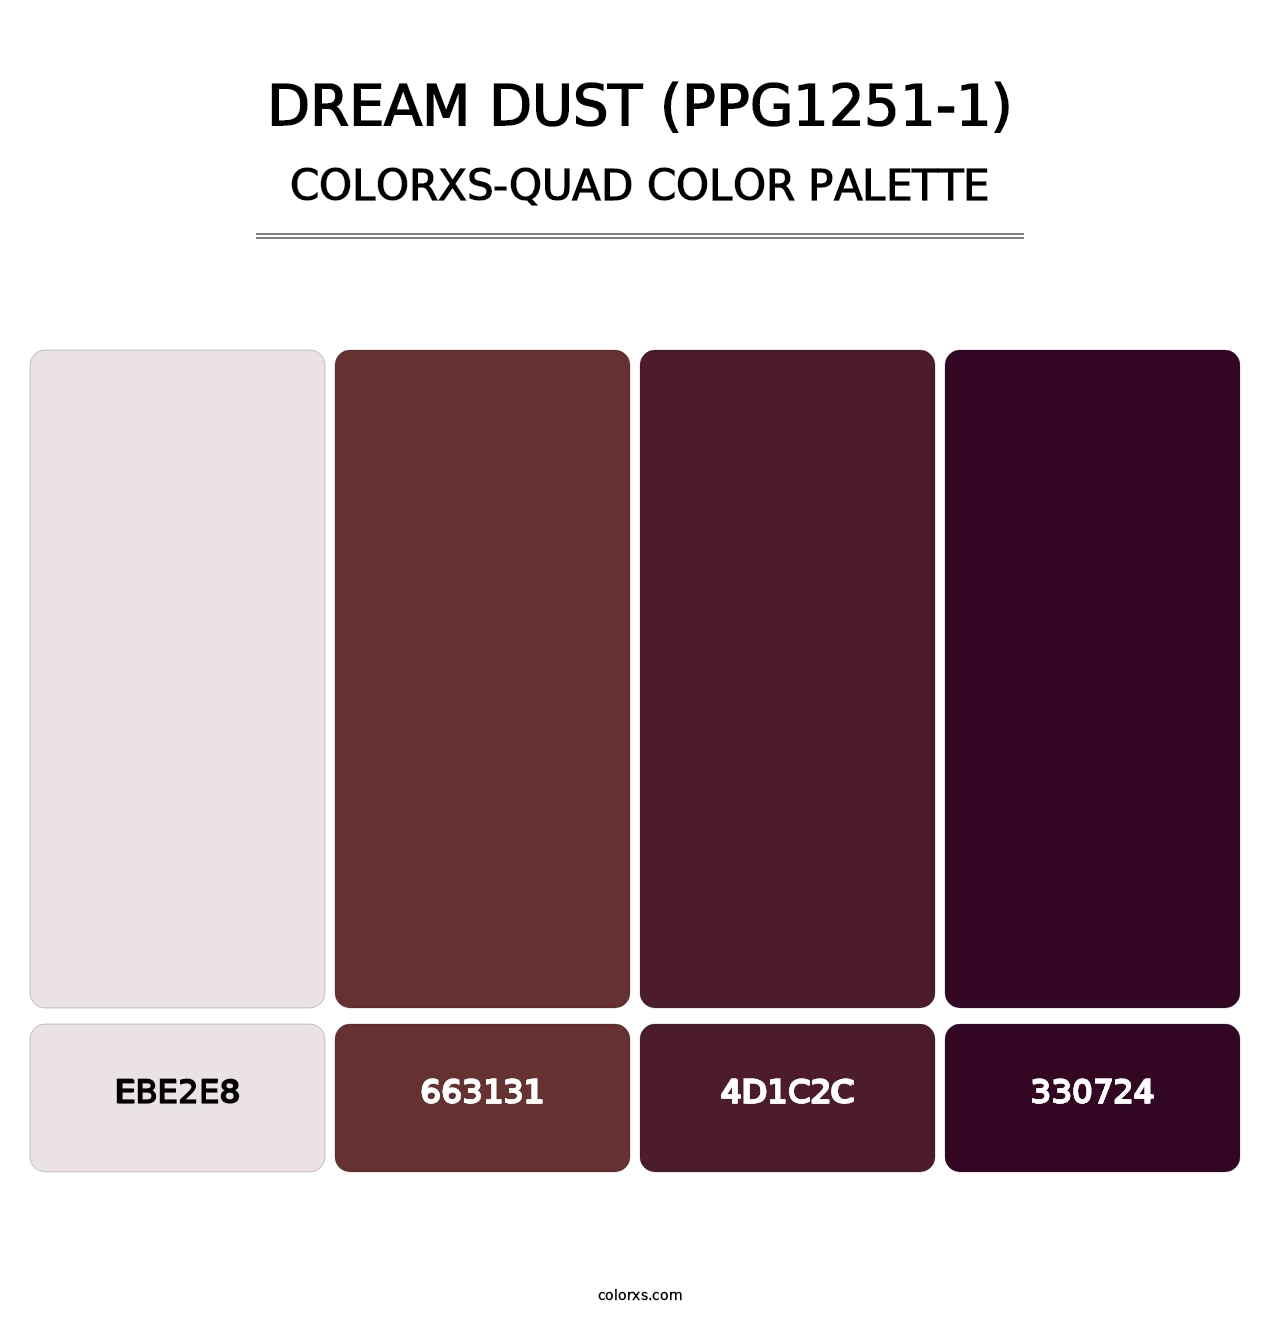 Dream Dust (PPG1251-1) - Colorxs Quad Palette